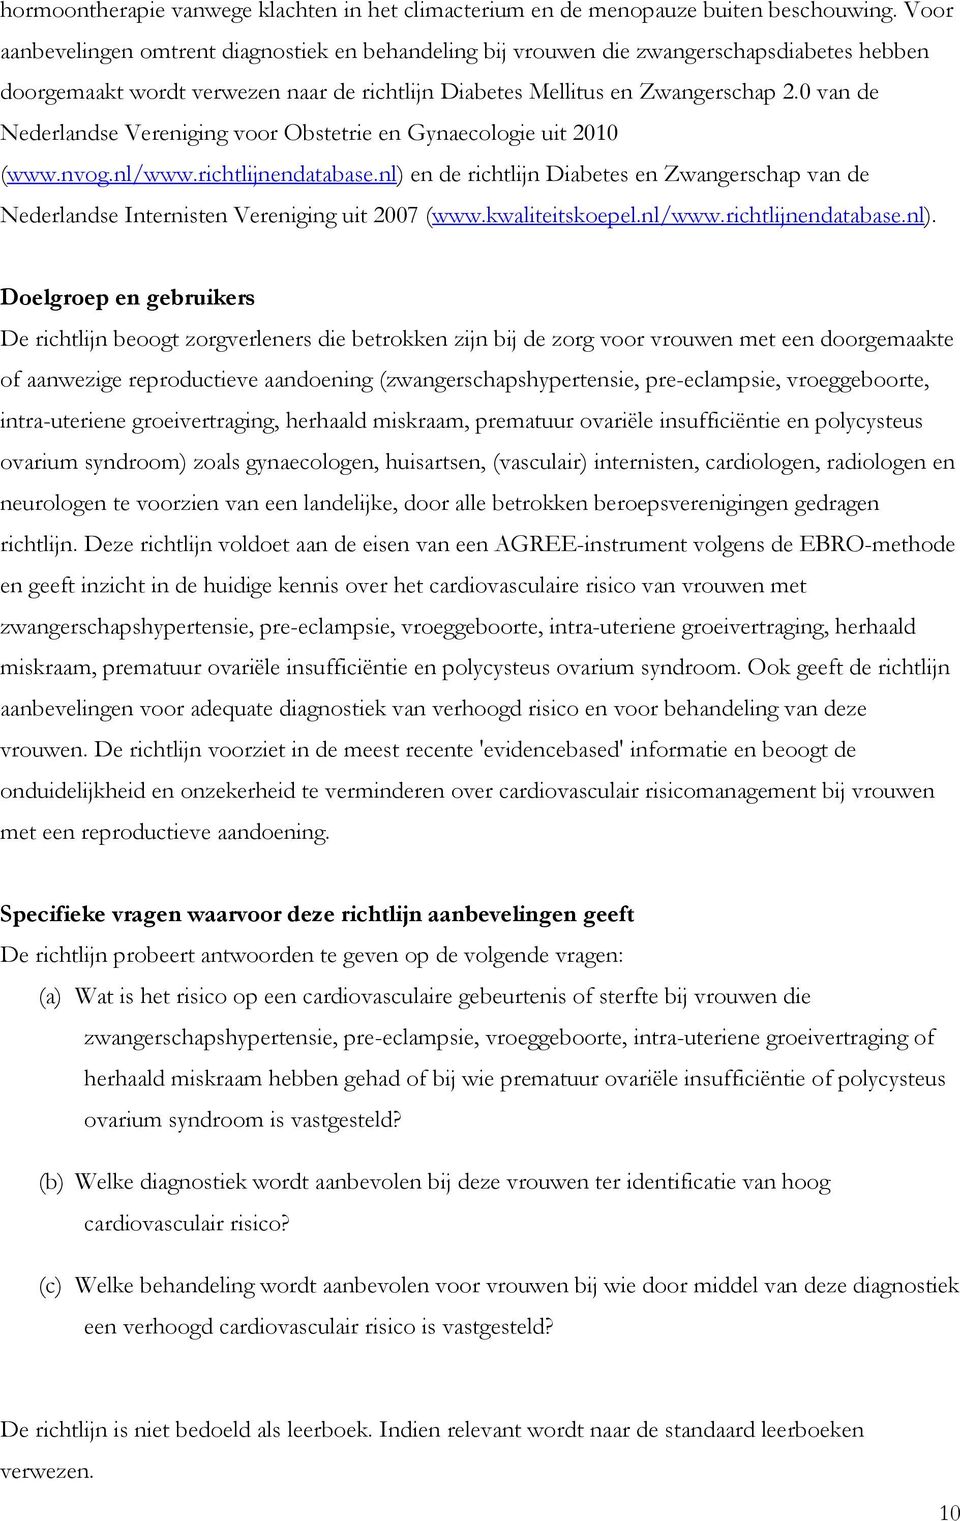 0 van de Nederlandse Vereniging voor Obstetrie en Gynaecologie uit 2010 (www.nvog.nl/www.richtlijnendatabase.